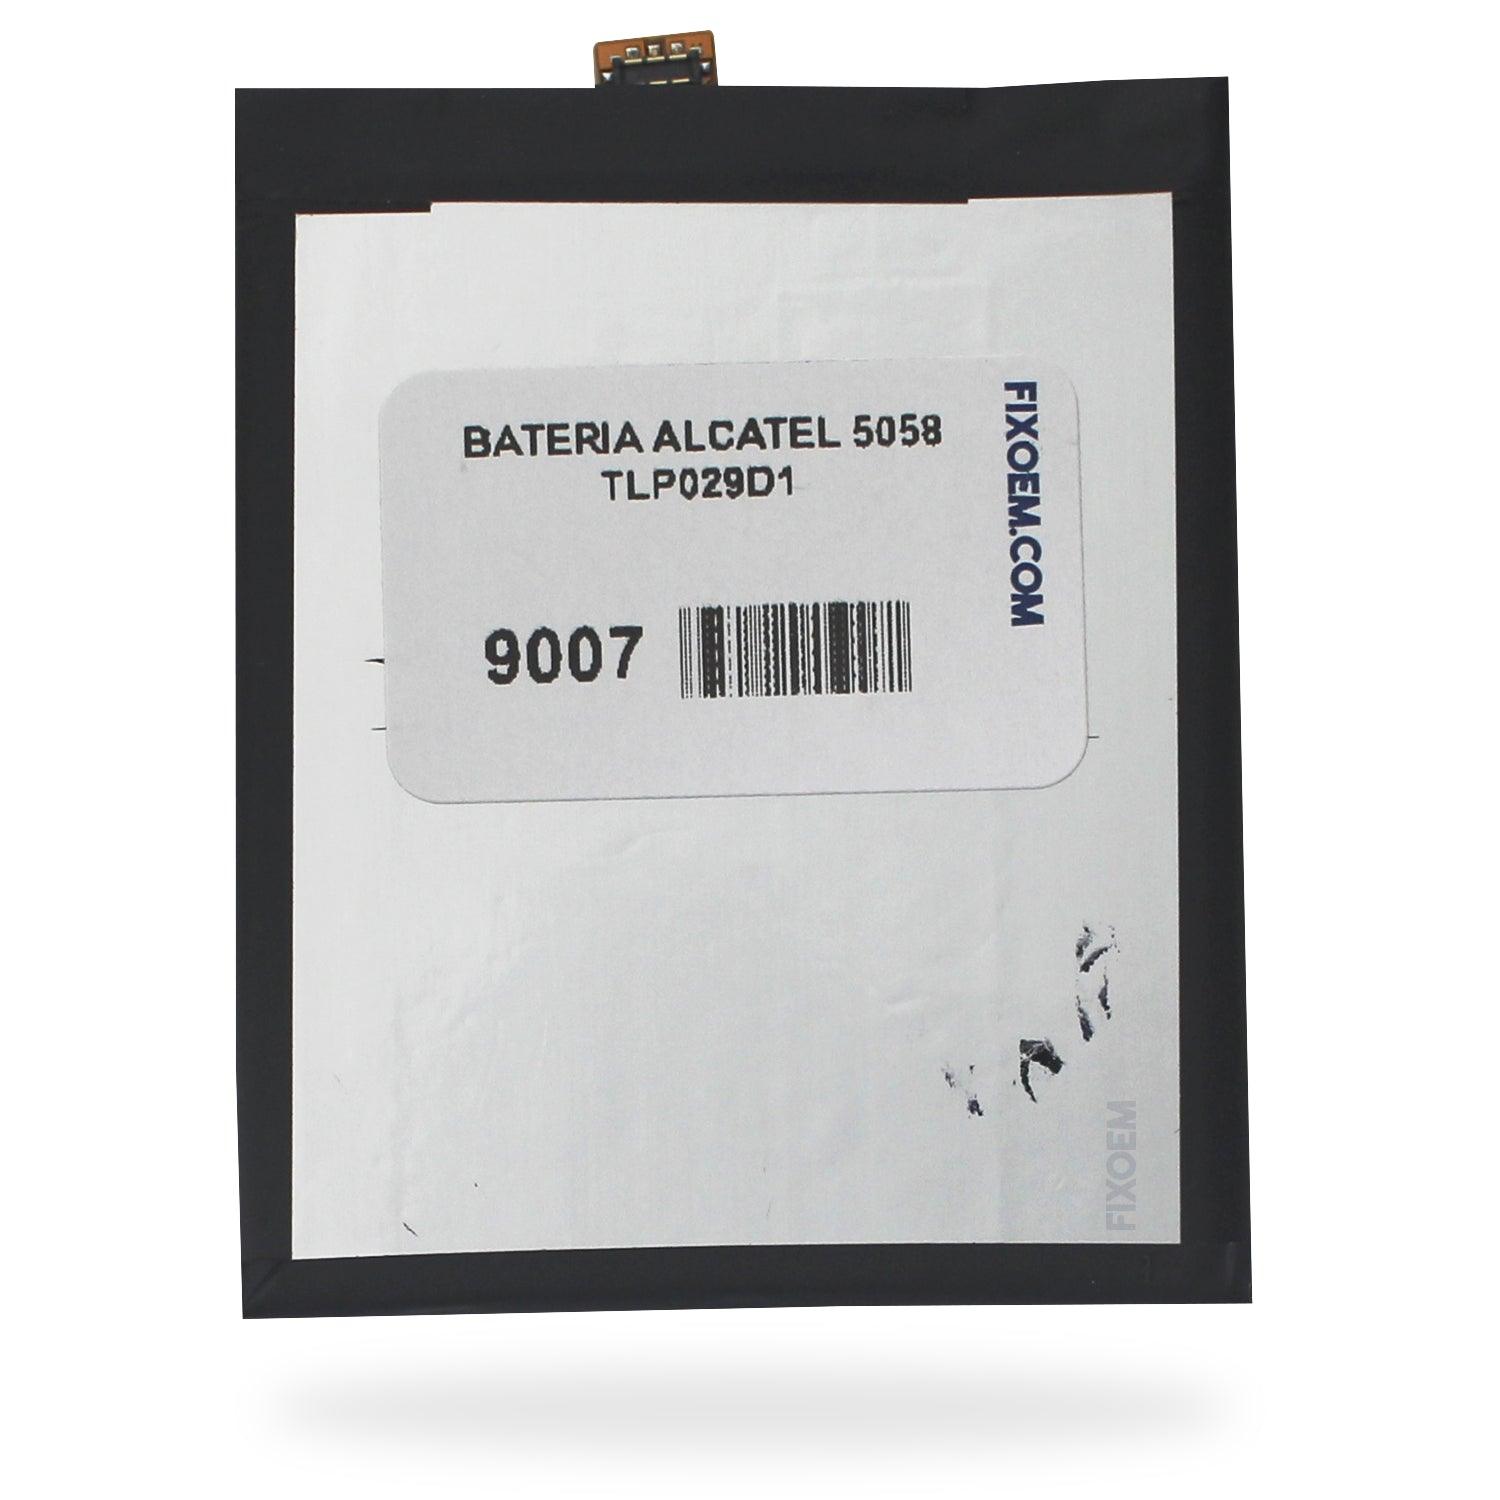 Bateria Alcatel 5058 Tlp029D1 a solo $ 140.00 Refaccion y puestos celulares, refurbish y microelectronica.- FixOEM